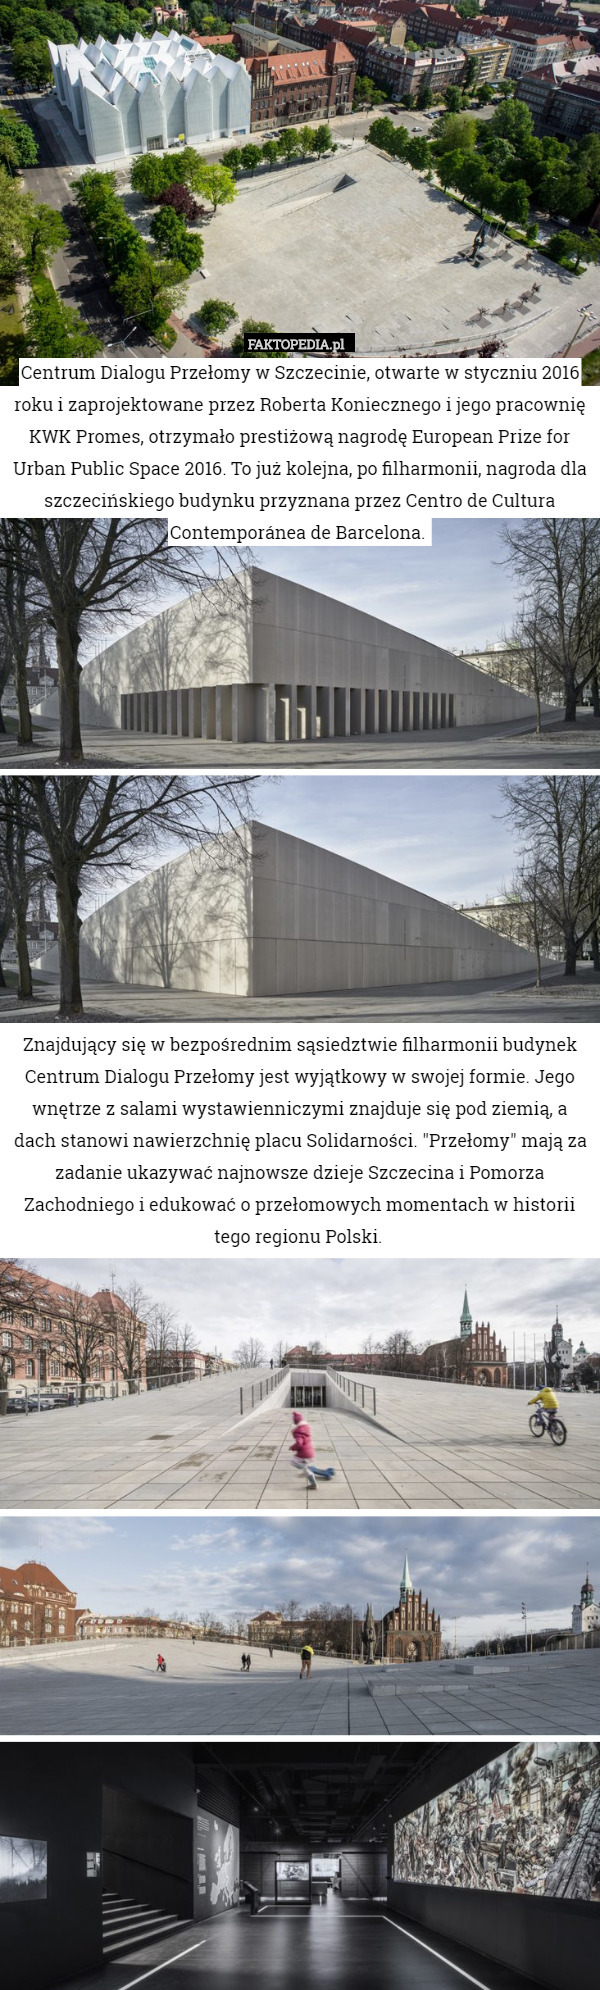 Centrum Dialogu Przełomy w Szczecinie, otwarte w styczniu 2016 roku i zaprojektowane